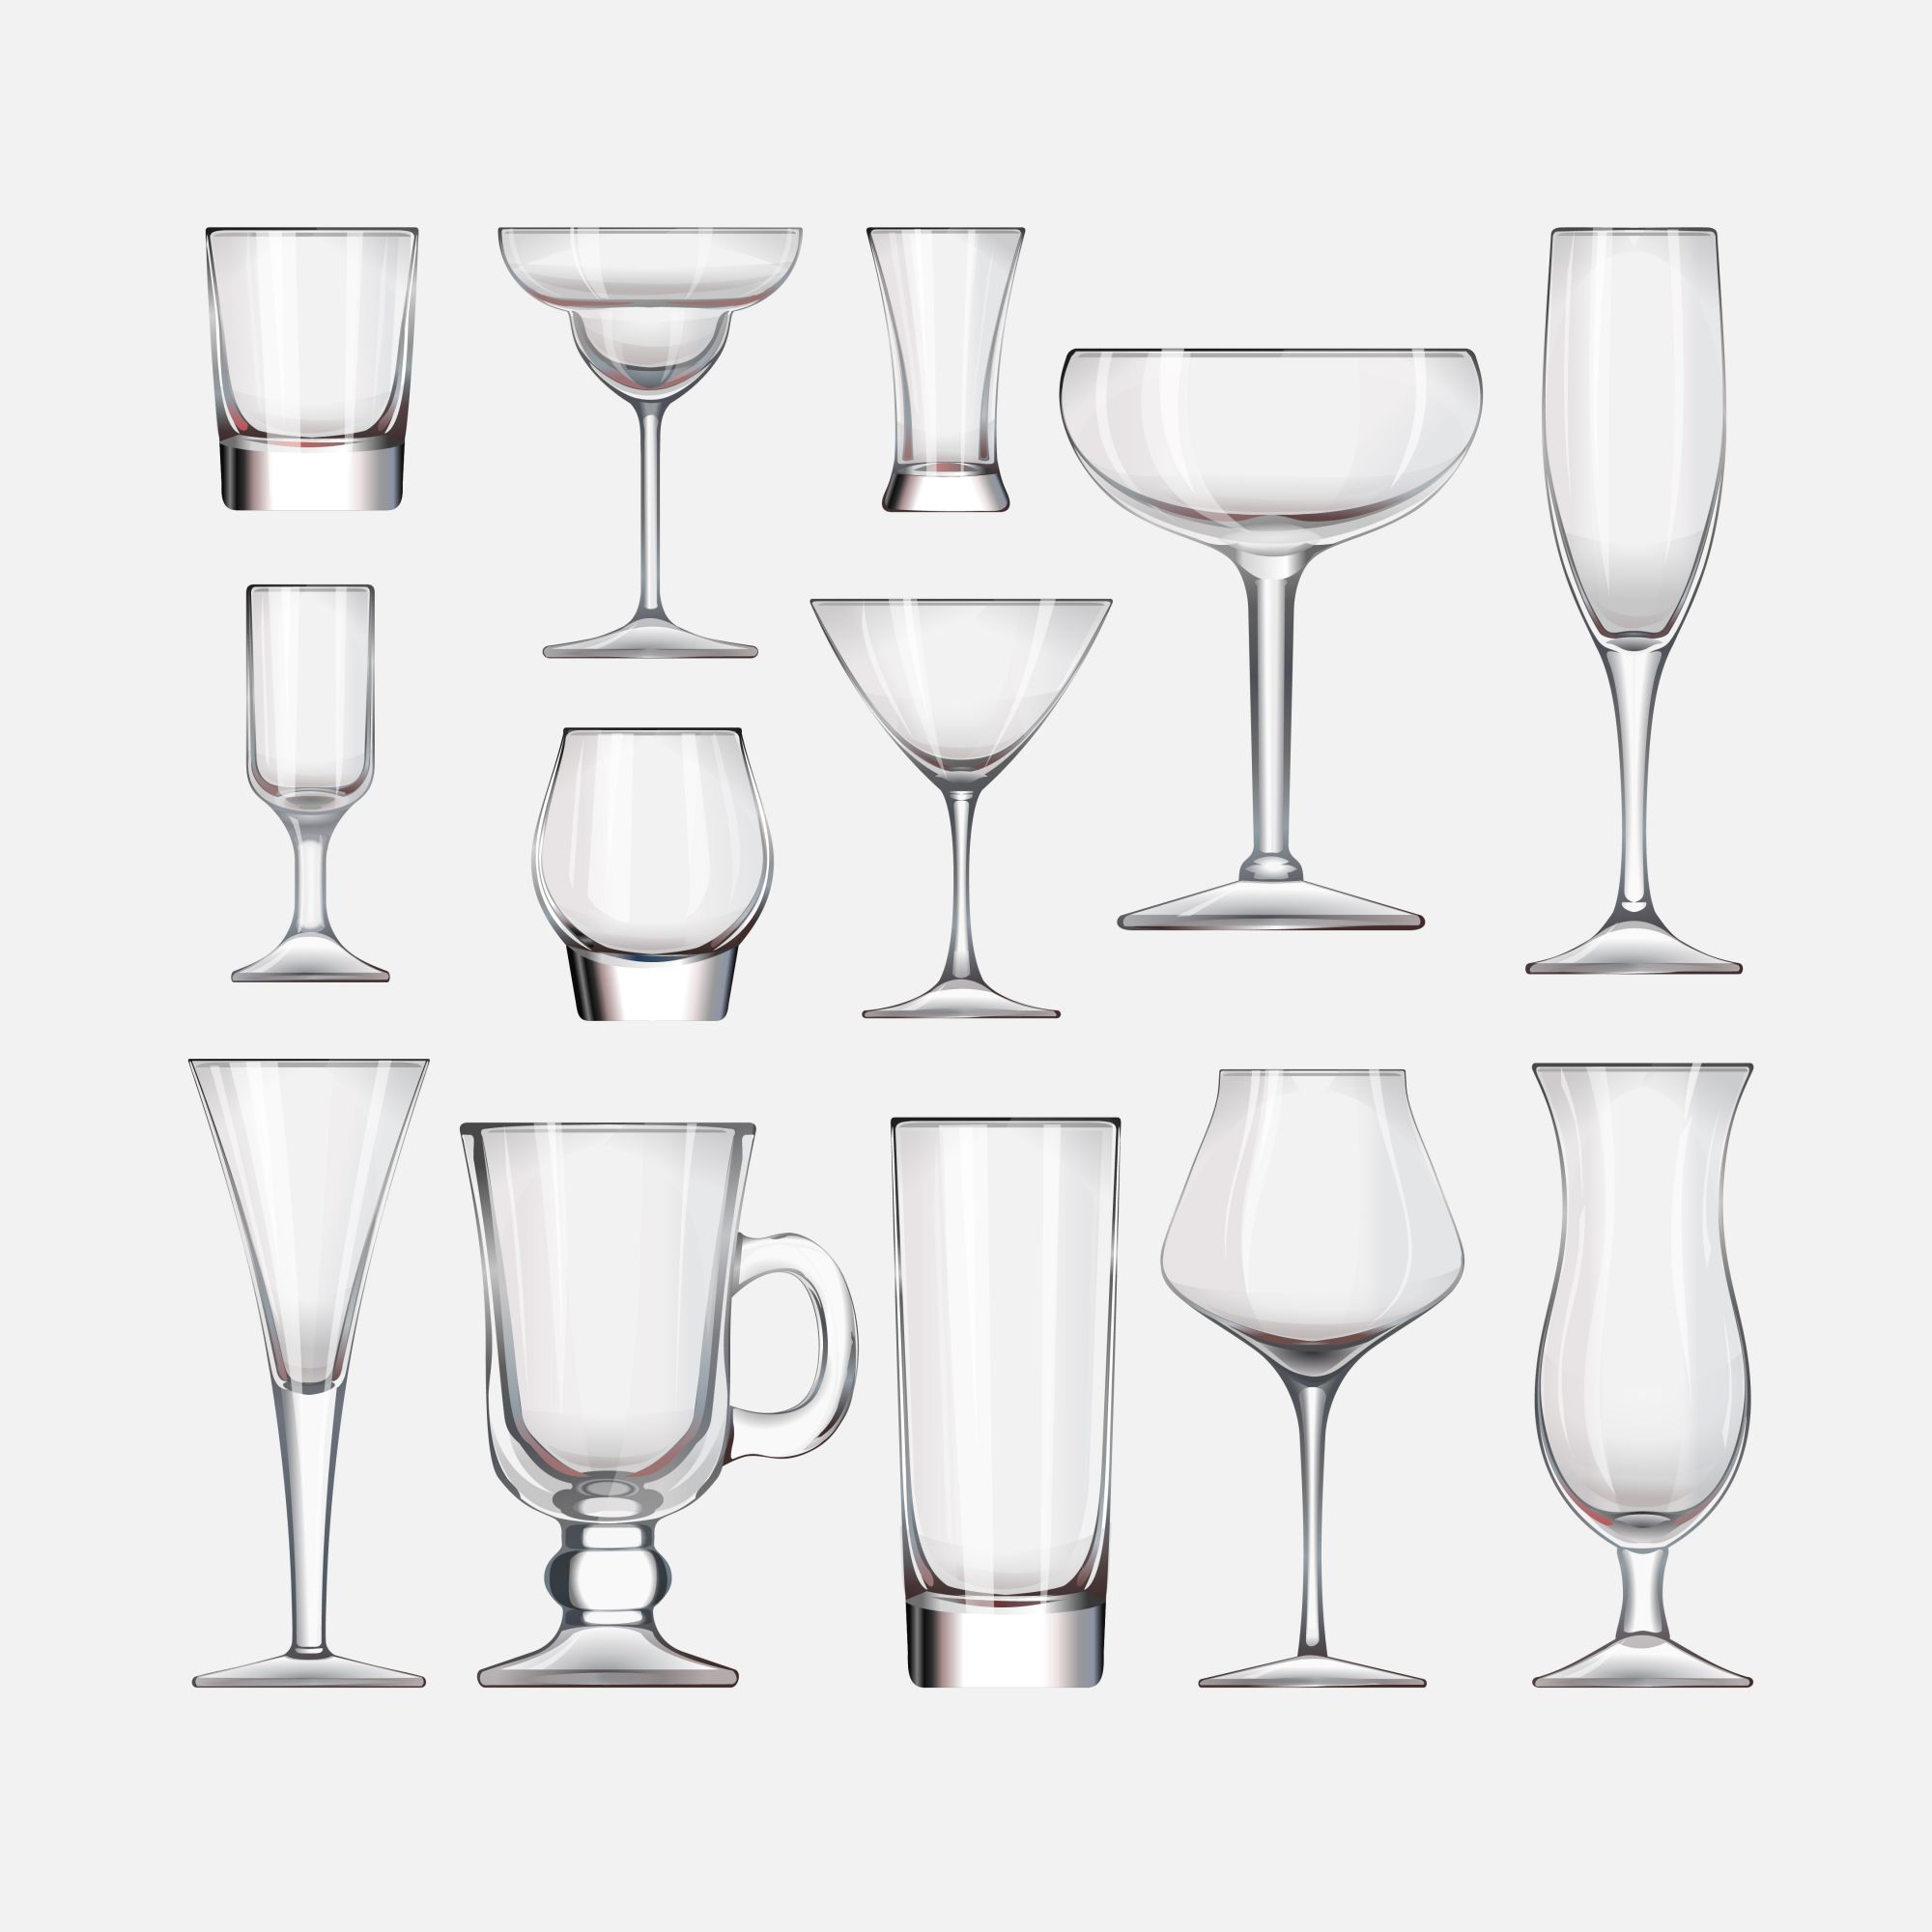 様々なグラスの種類を並べたイラスト